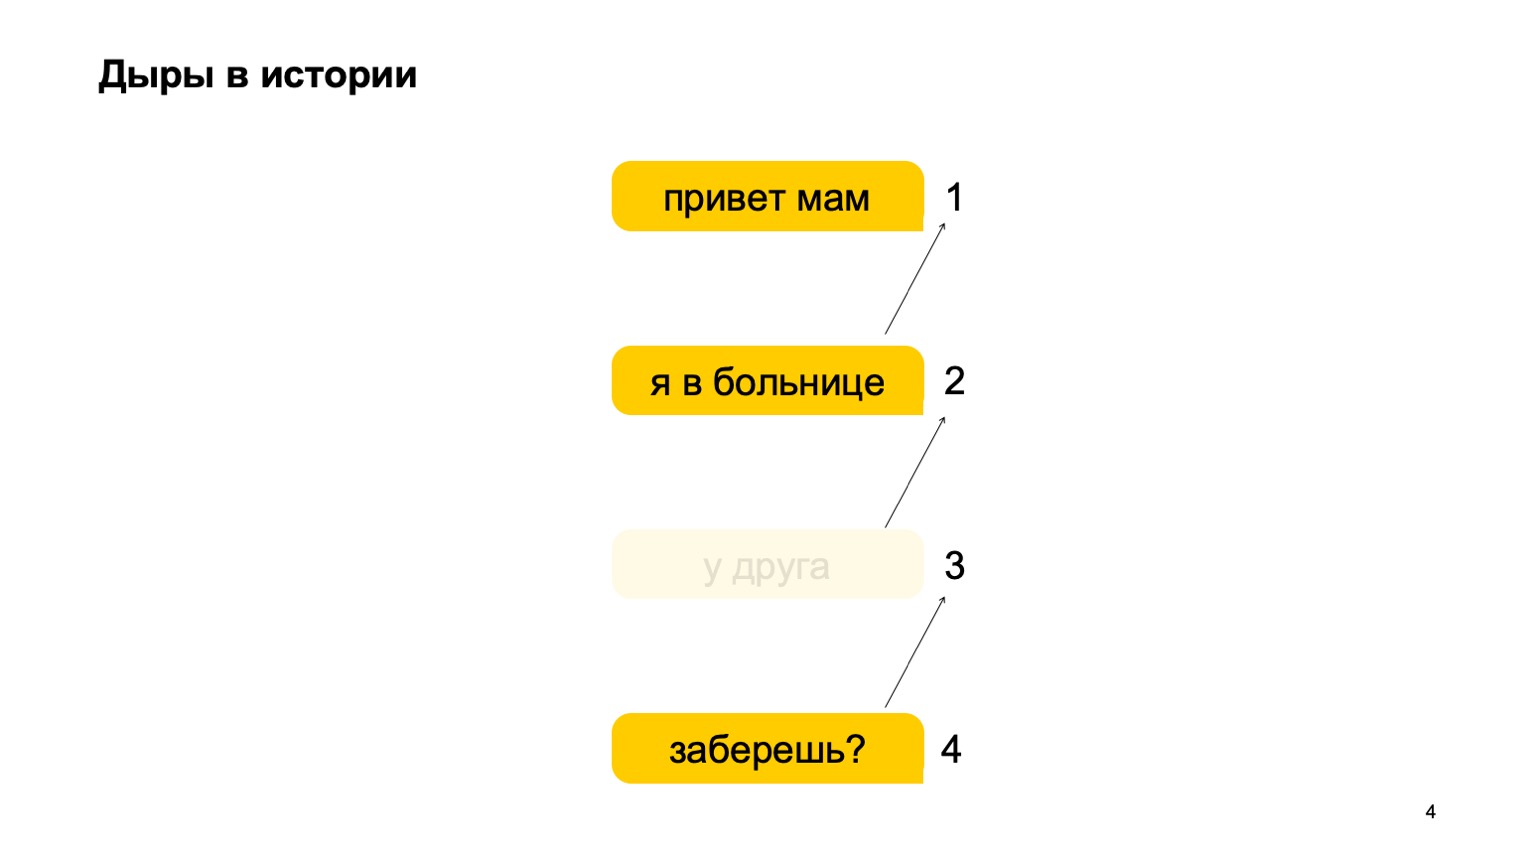 Мобильная разработка — это просто и скучно? Доклад Яндекса - 4